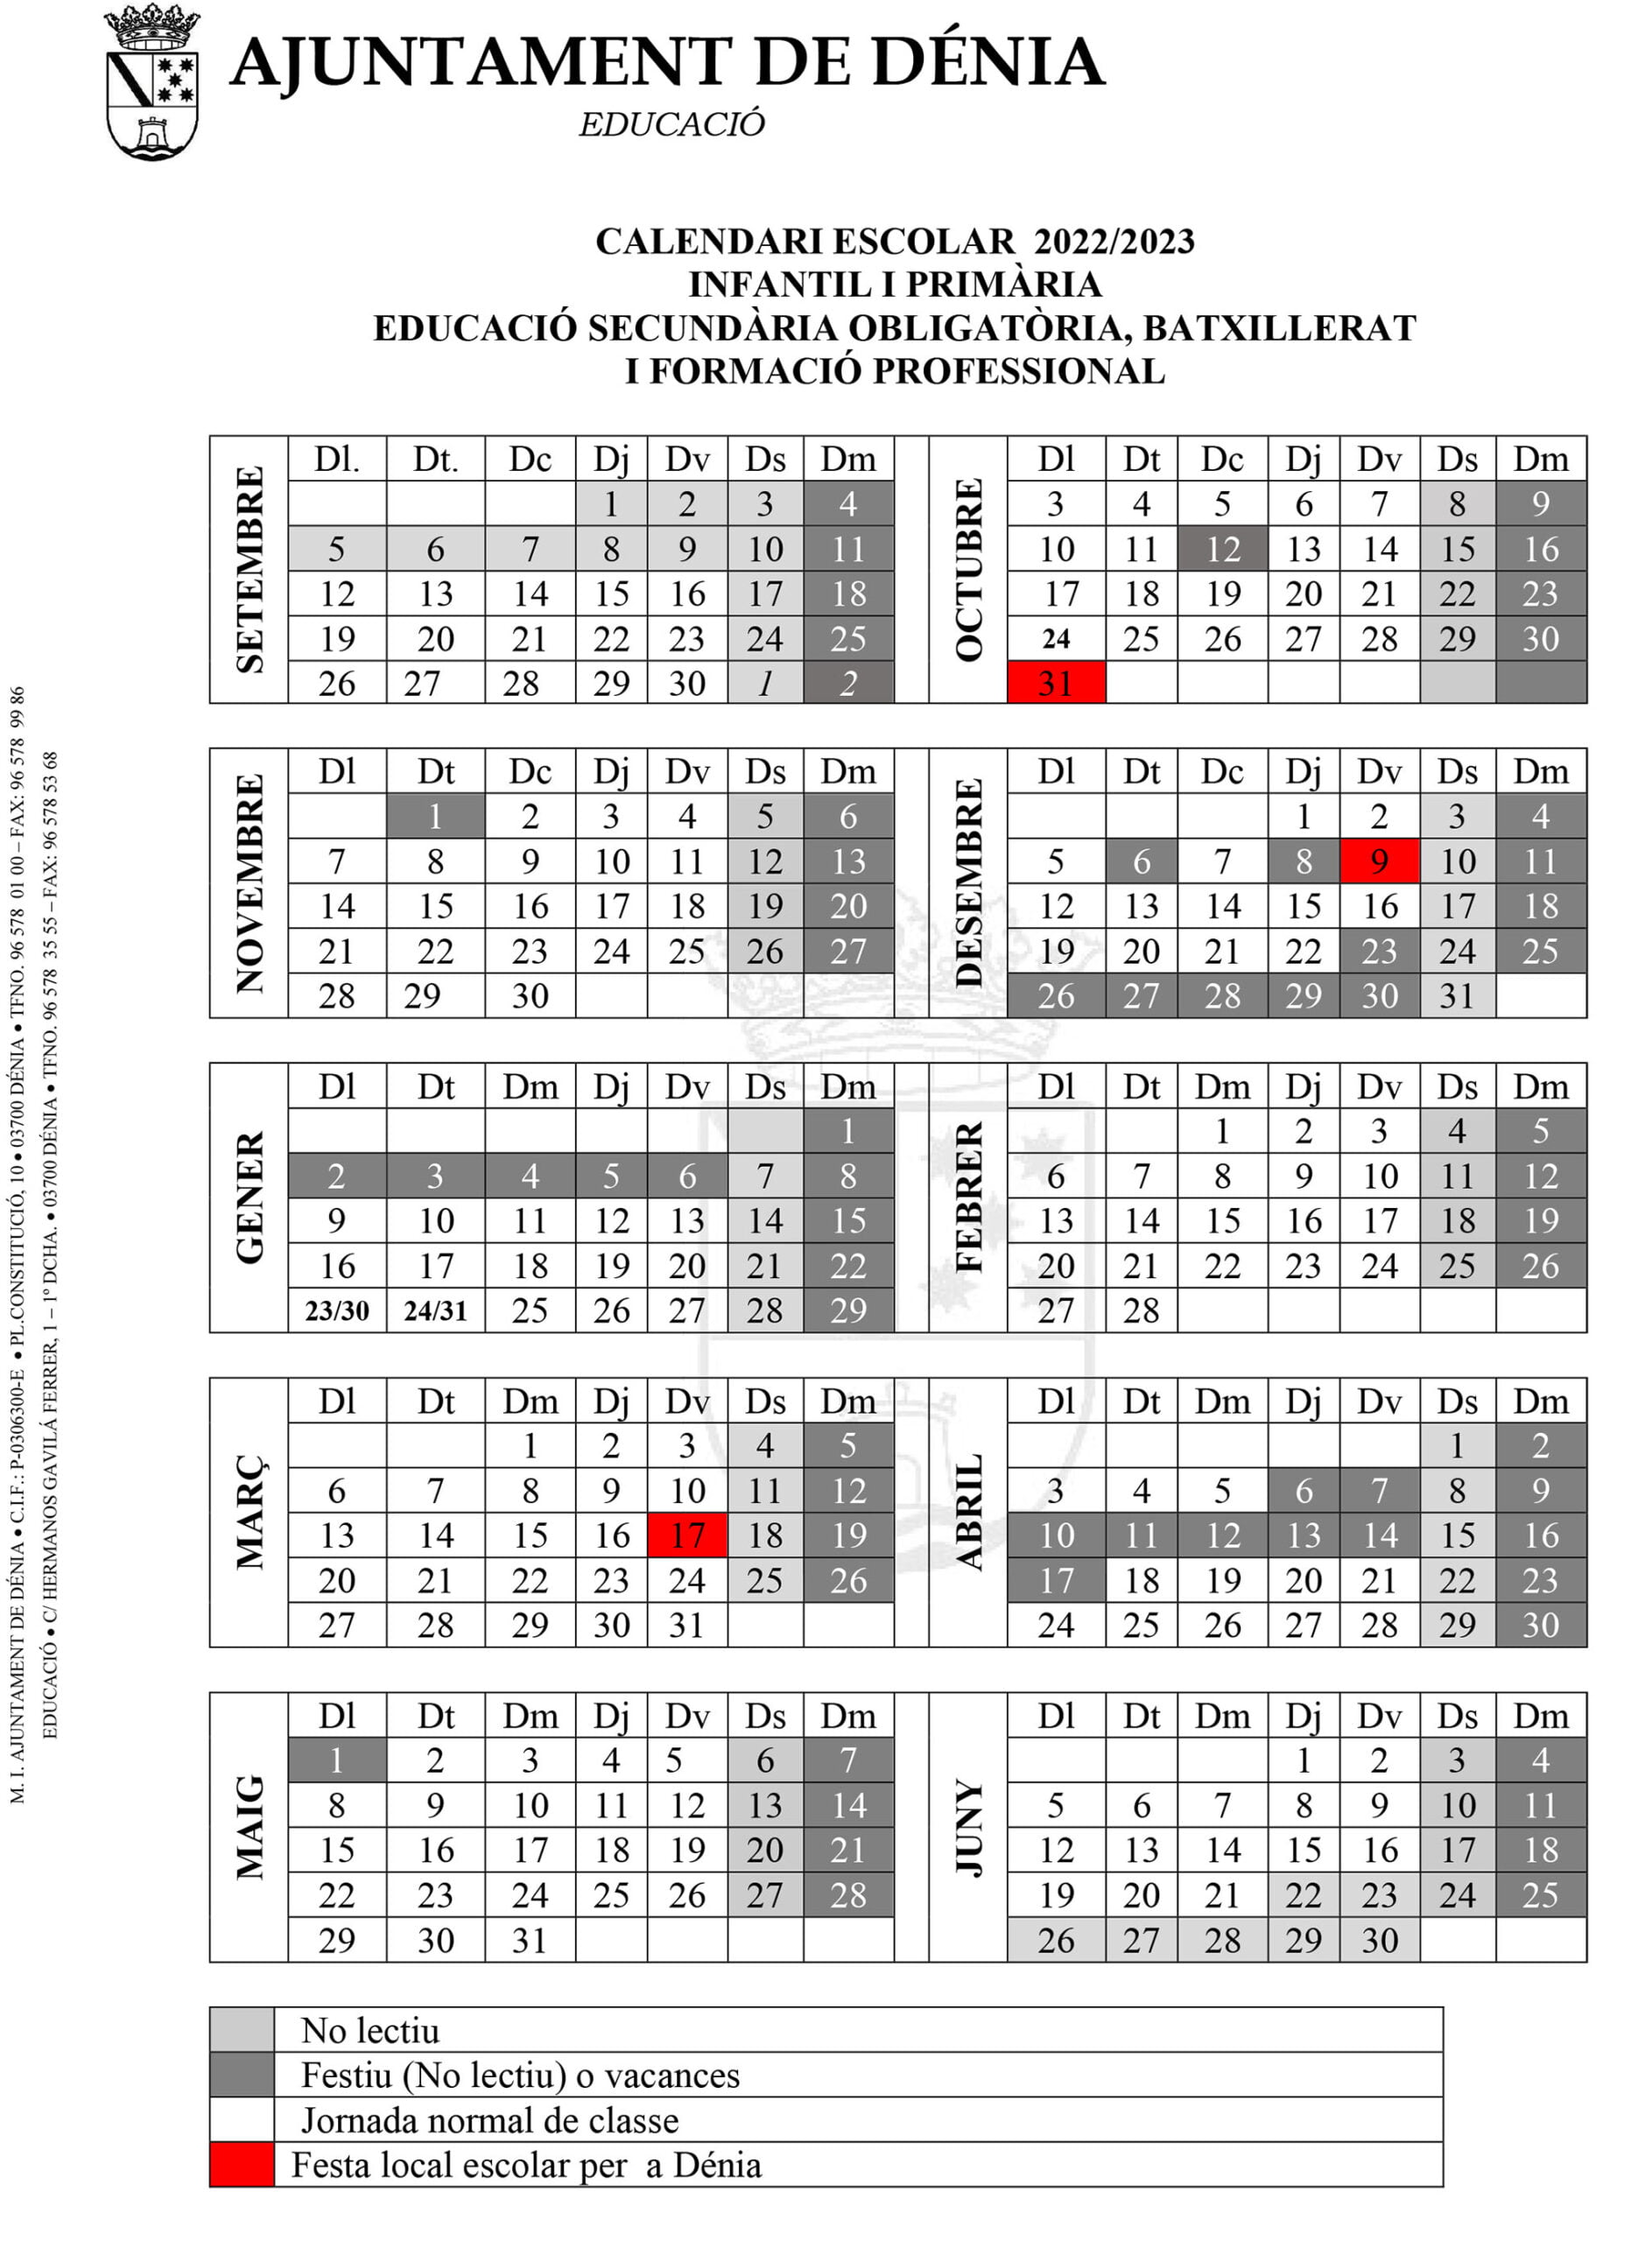 Calendario escolar de Dénia del curso 2022-2023